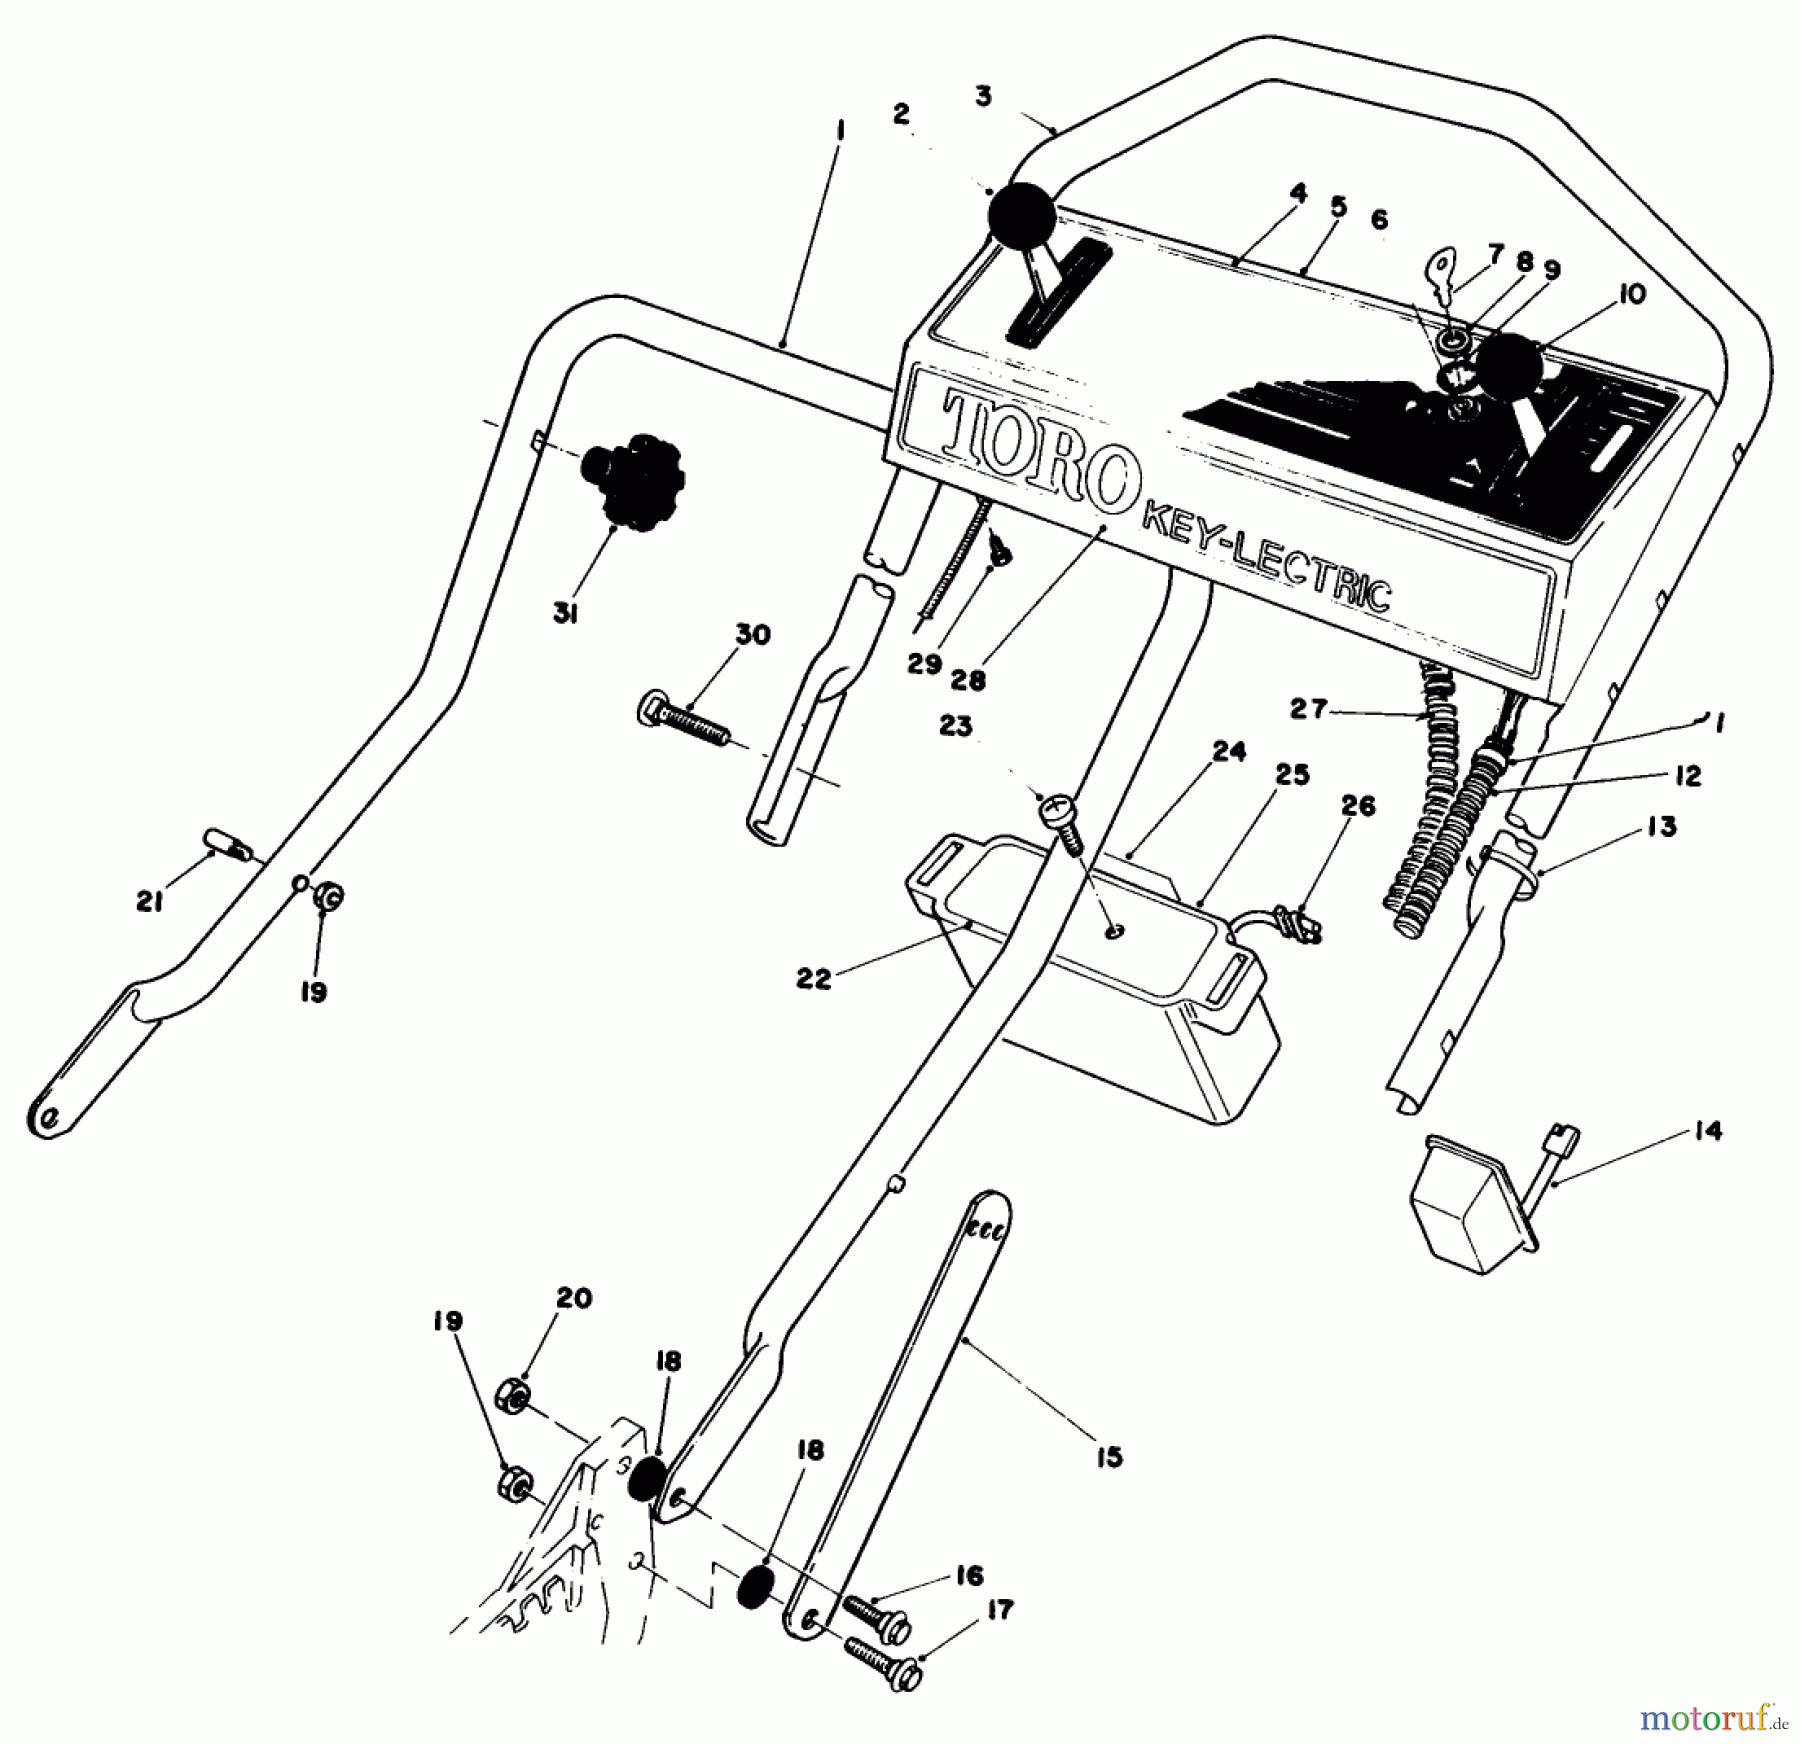  Toro Neu Mowers, Walk-Behind Seite 1 20676 - Toro Lawnmower, 1984 (4000001-4999999) HANDLE ASSEMBLY